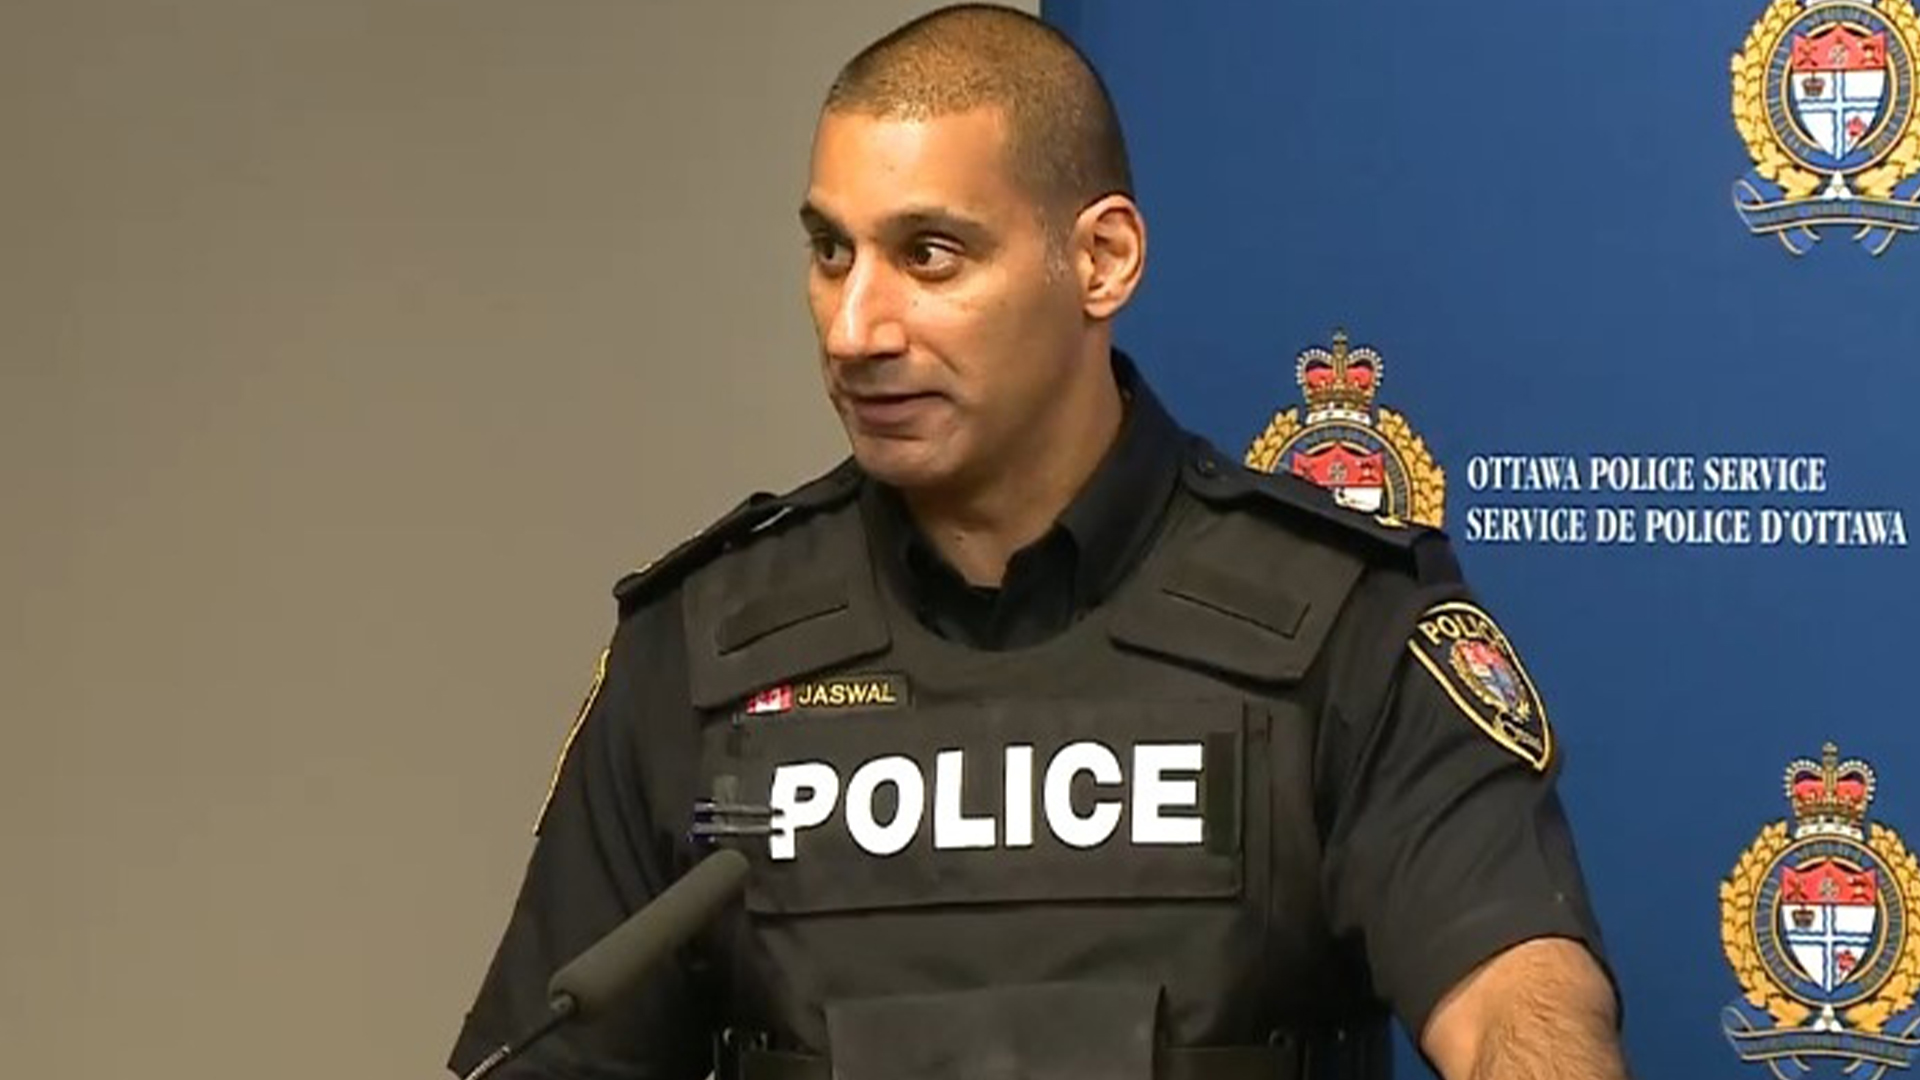 L'ancien chef adjoint de la police d'Ottawa, Uday Jaswal, fait l'objet d'une allégation historique d'agression sexuelle de la part d'une policière de la police d'Ottawa.